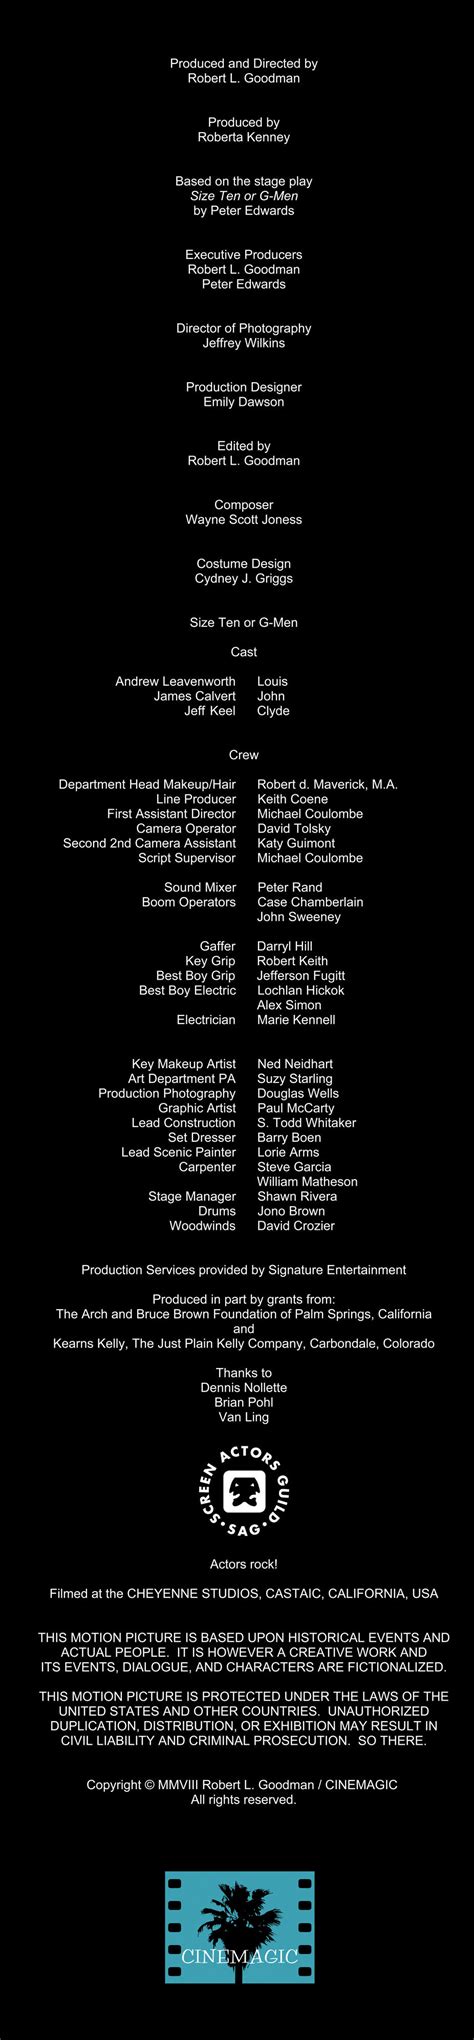 Ватерфолл lyrics credits, cast, crew of song